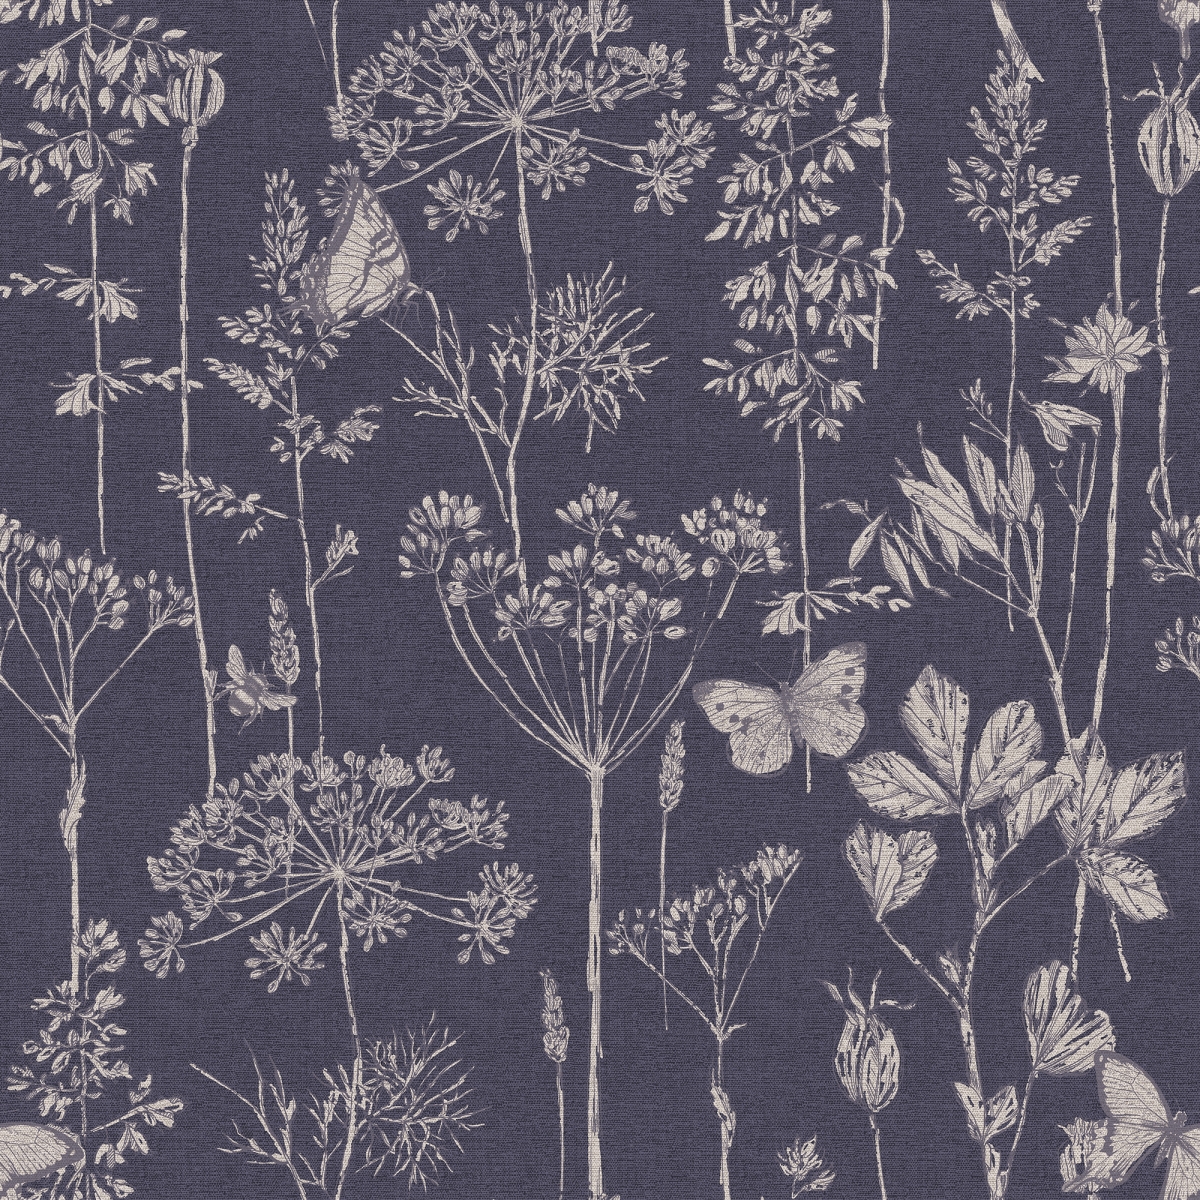 904108 Meadow Floral Non-woven Wallpaper, Indigo